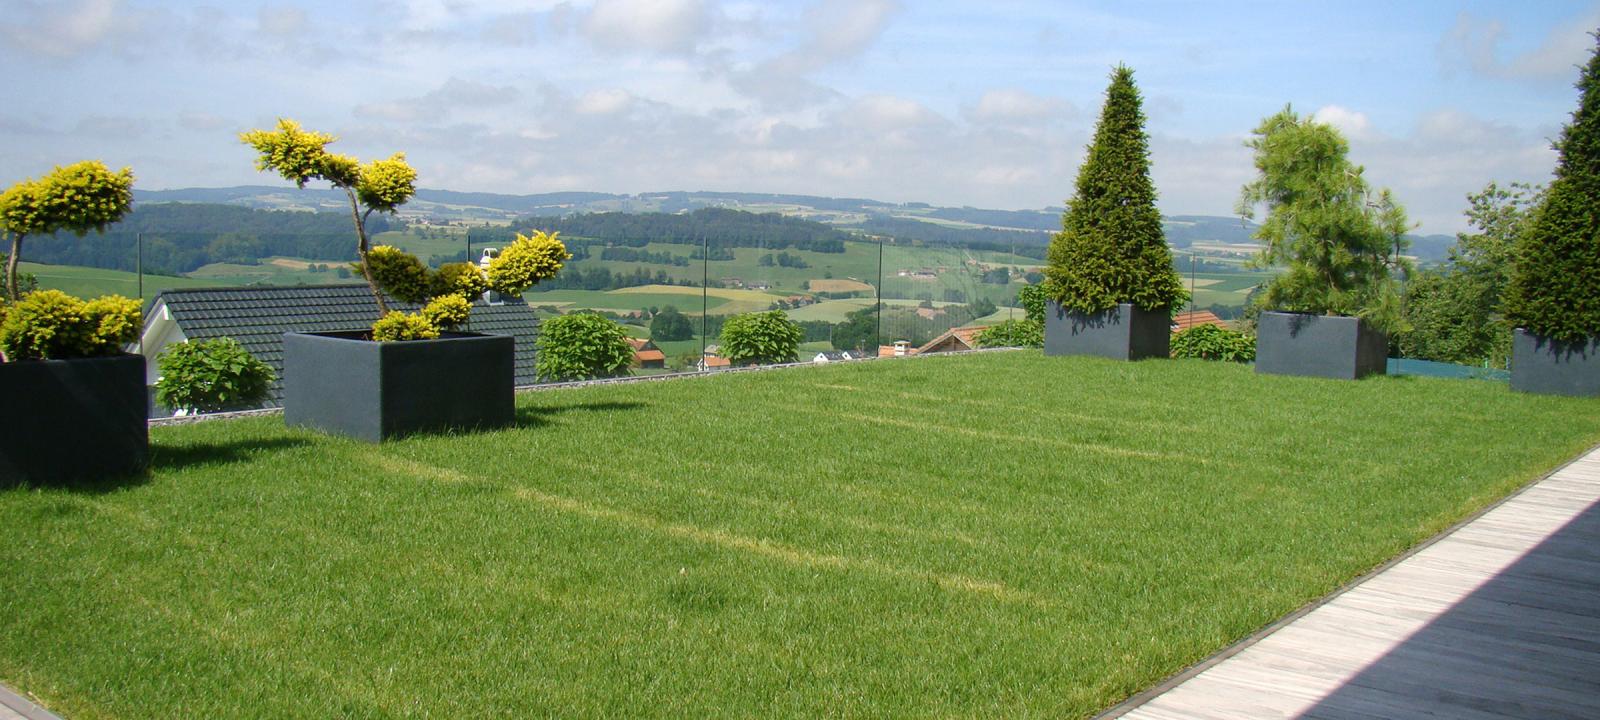 Dachgarten mit Rasenfläche und Ziergehölzen in großen Kübeln